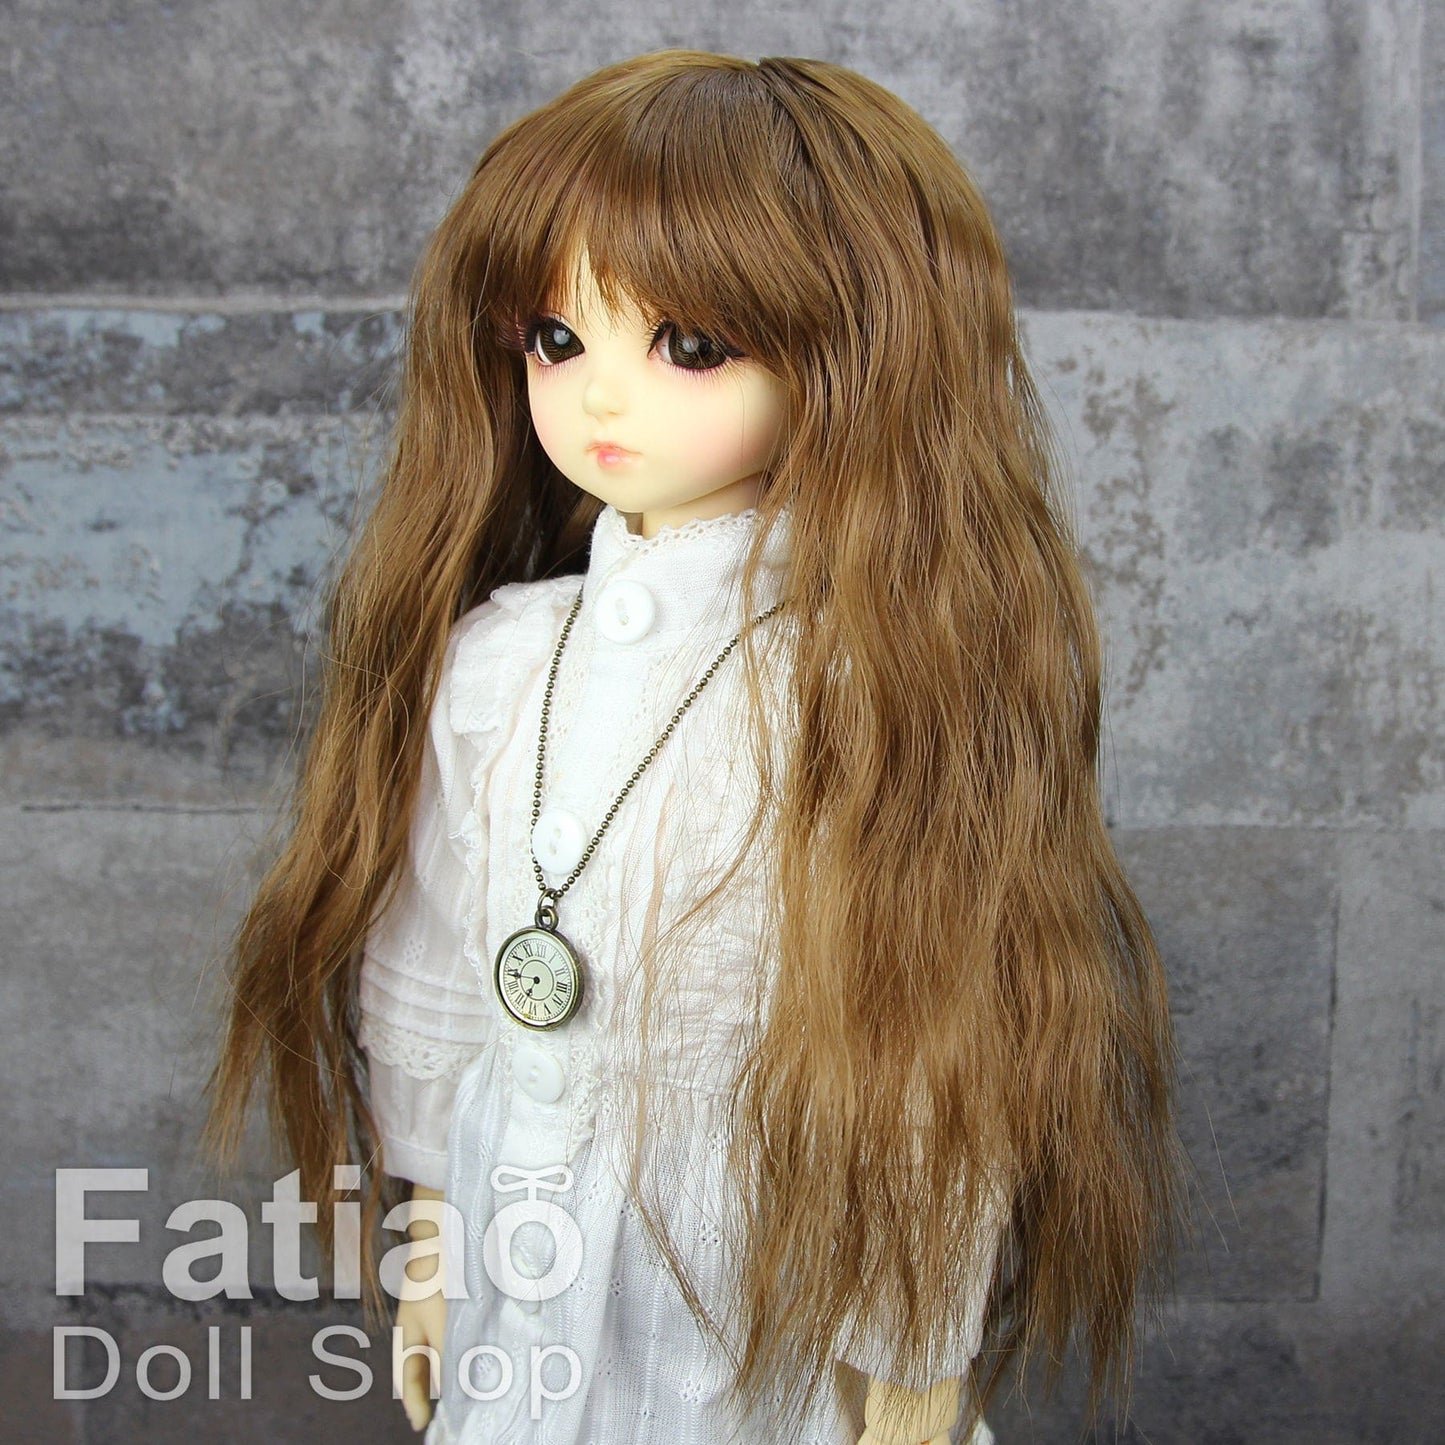 【Fatiao Doll Shop】FWF-223 娃用假髮 多色 / 7-8吋 BJD 4分 iMda3.0